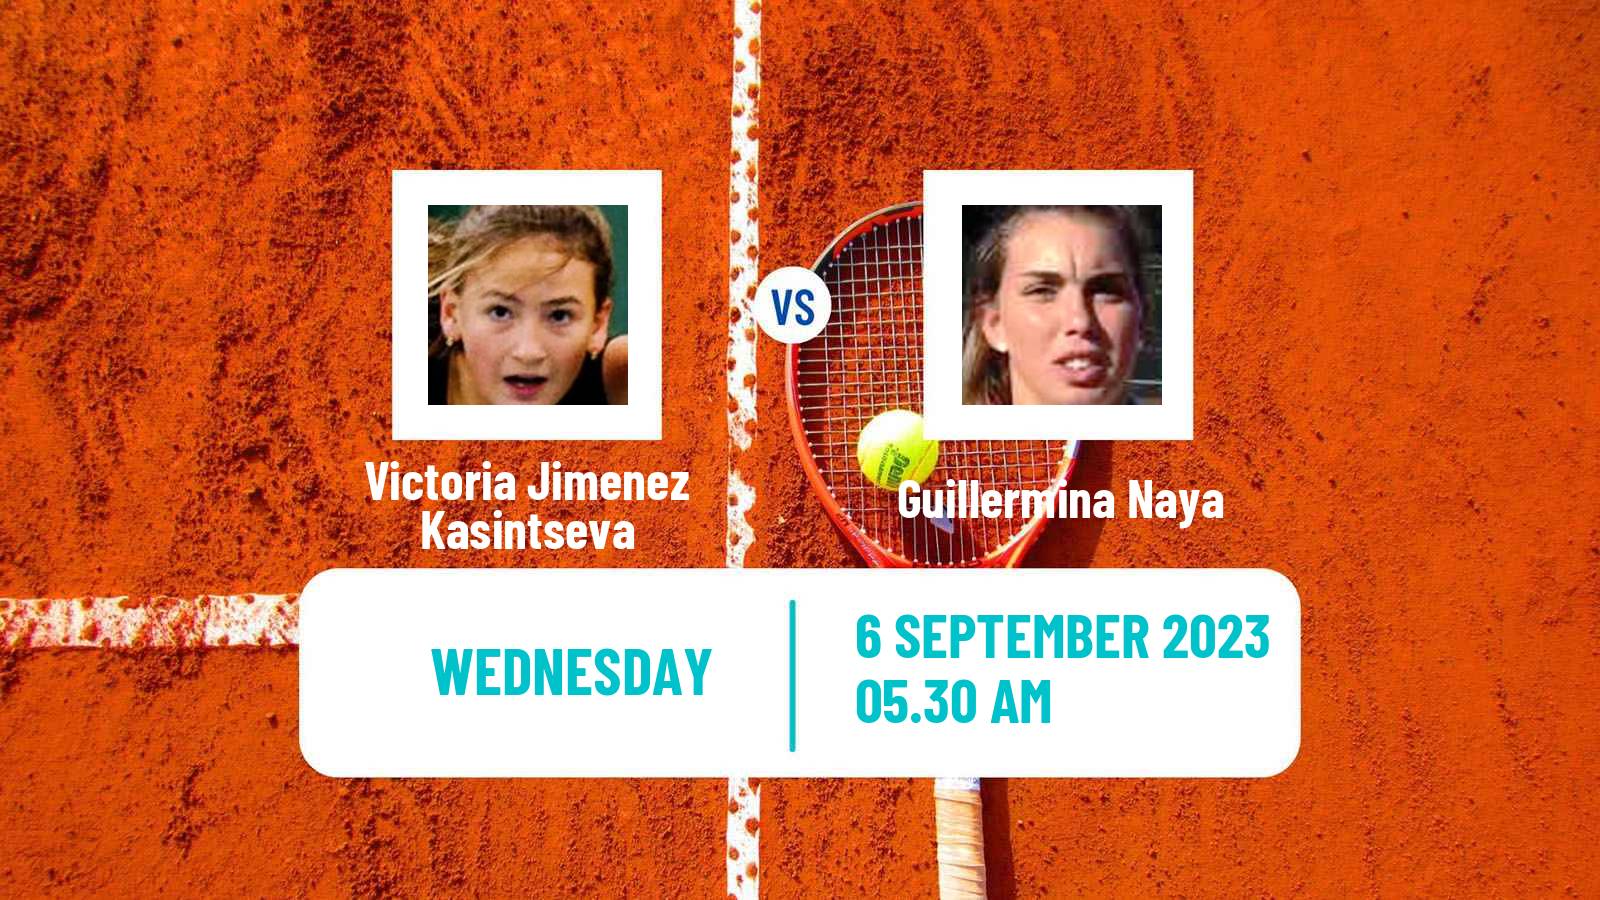 Tennis ITF W25 Zaragoza Women Victoria Jimenez Kasintseva - Guillermina Naya